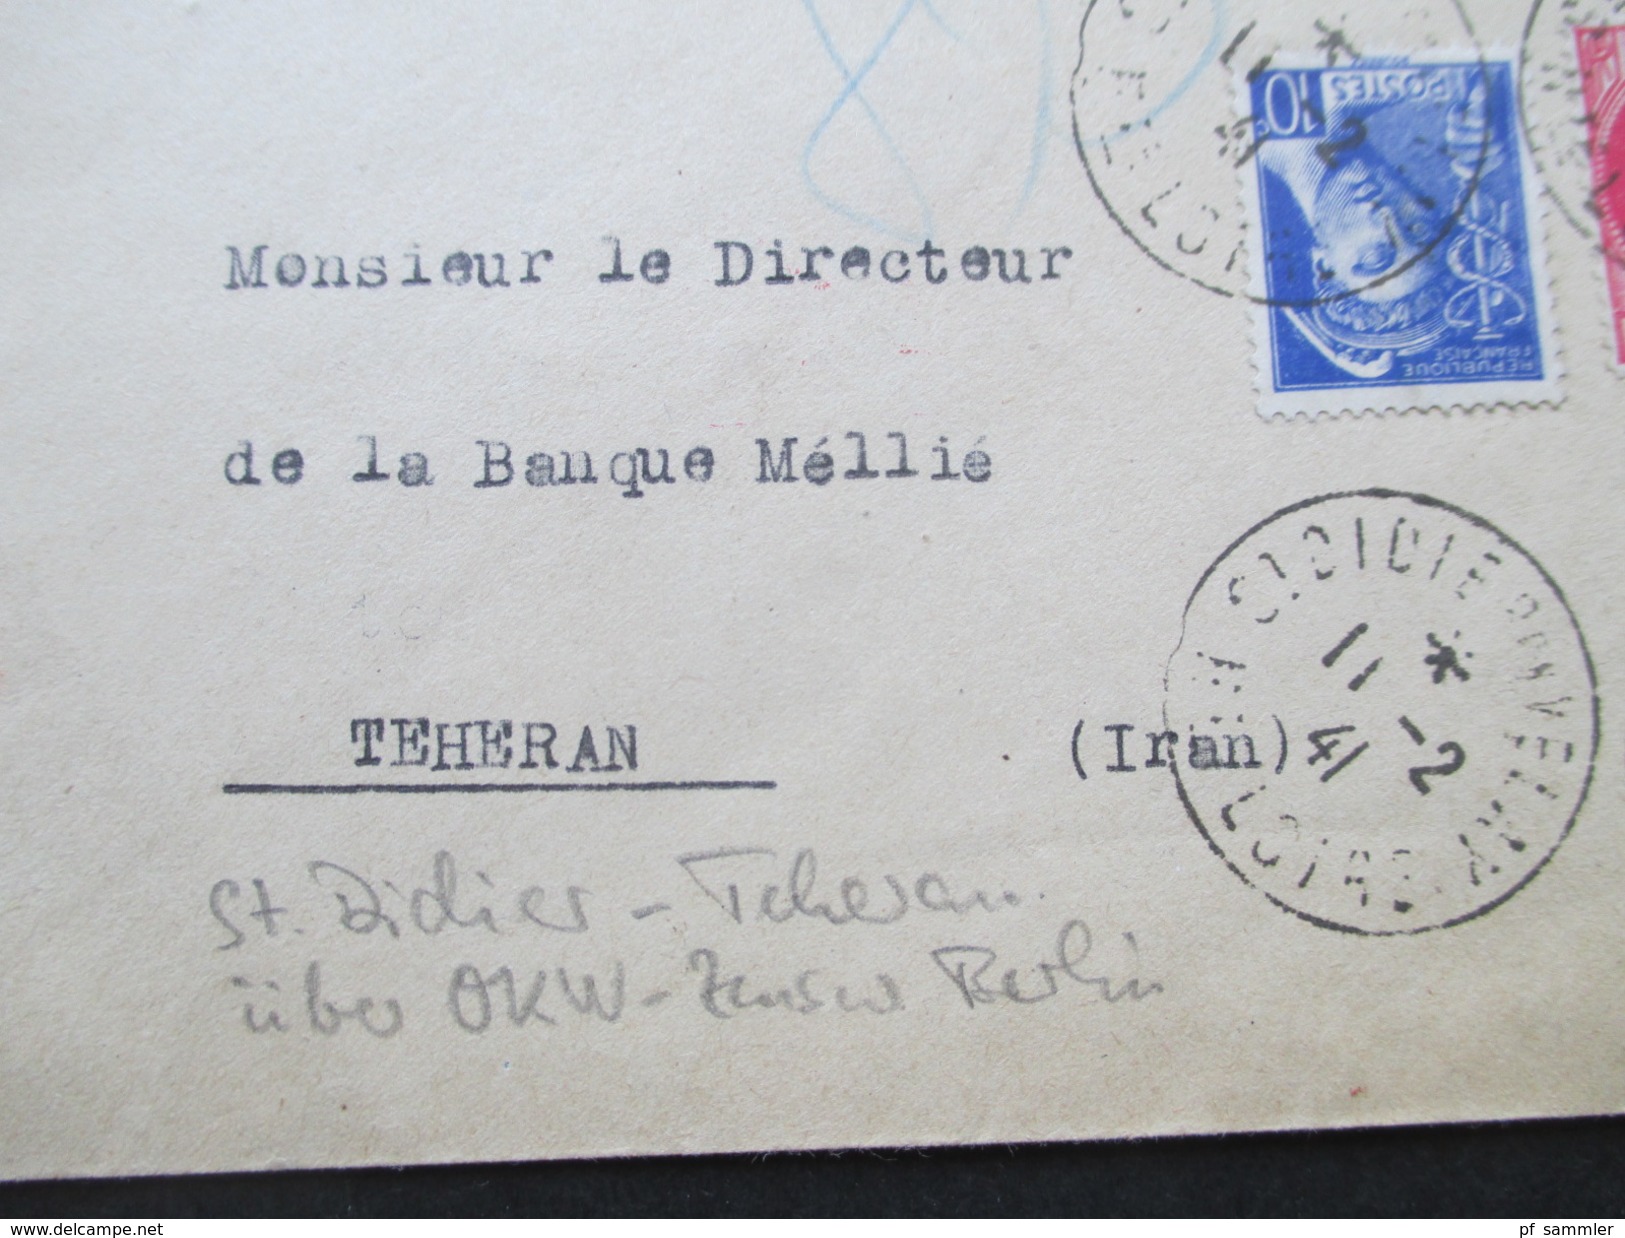 Frankreich 1941 St. Didier En Valey - Teheran Iran. Über OKW Zensur Berlin. Seltene Destination!! Zensurbeleg 3. Reich. - Covers & Documents